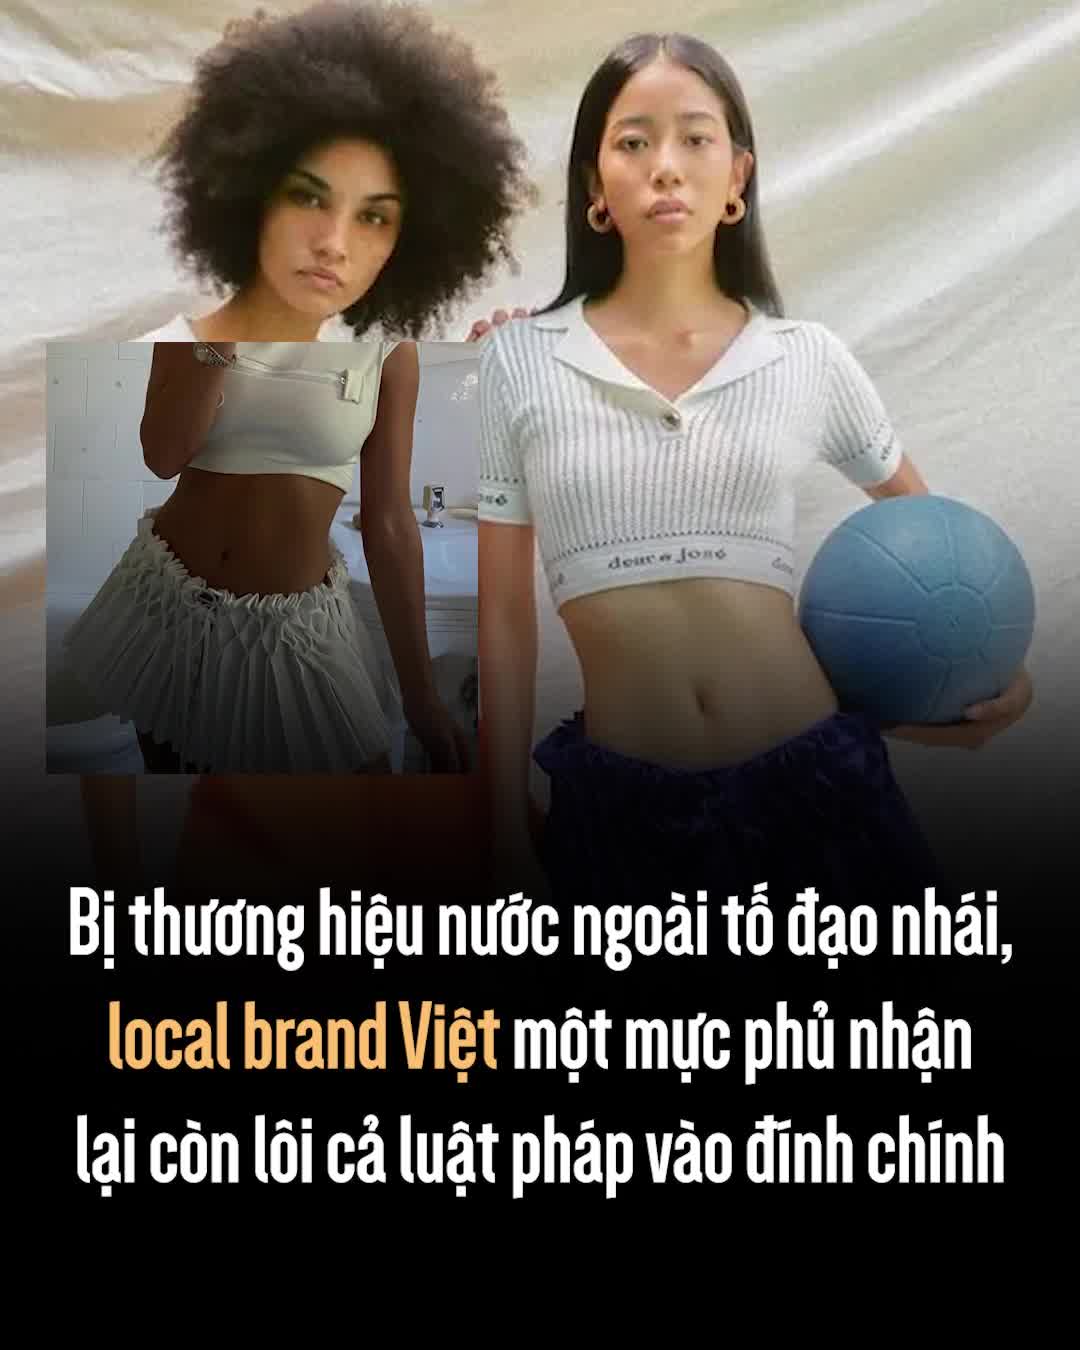 thumbnail - Bị thương hiệu nước ngoài đăng đàn tố đạo nhái, local brand Việt một mực phủ nhận lại còn lôi cả luật pháp vào đính chính